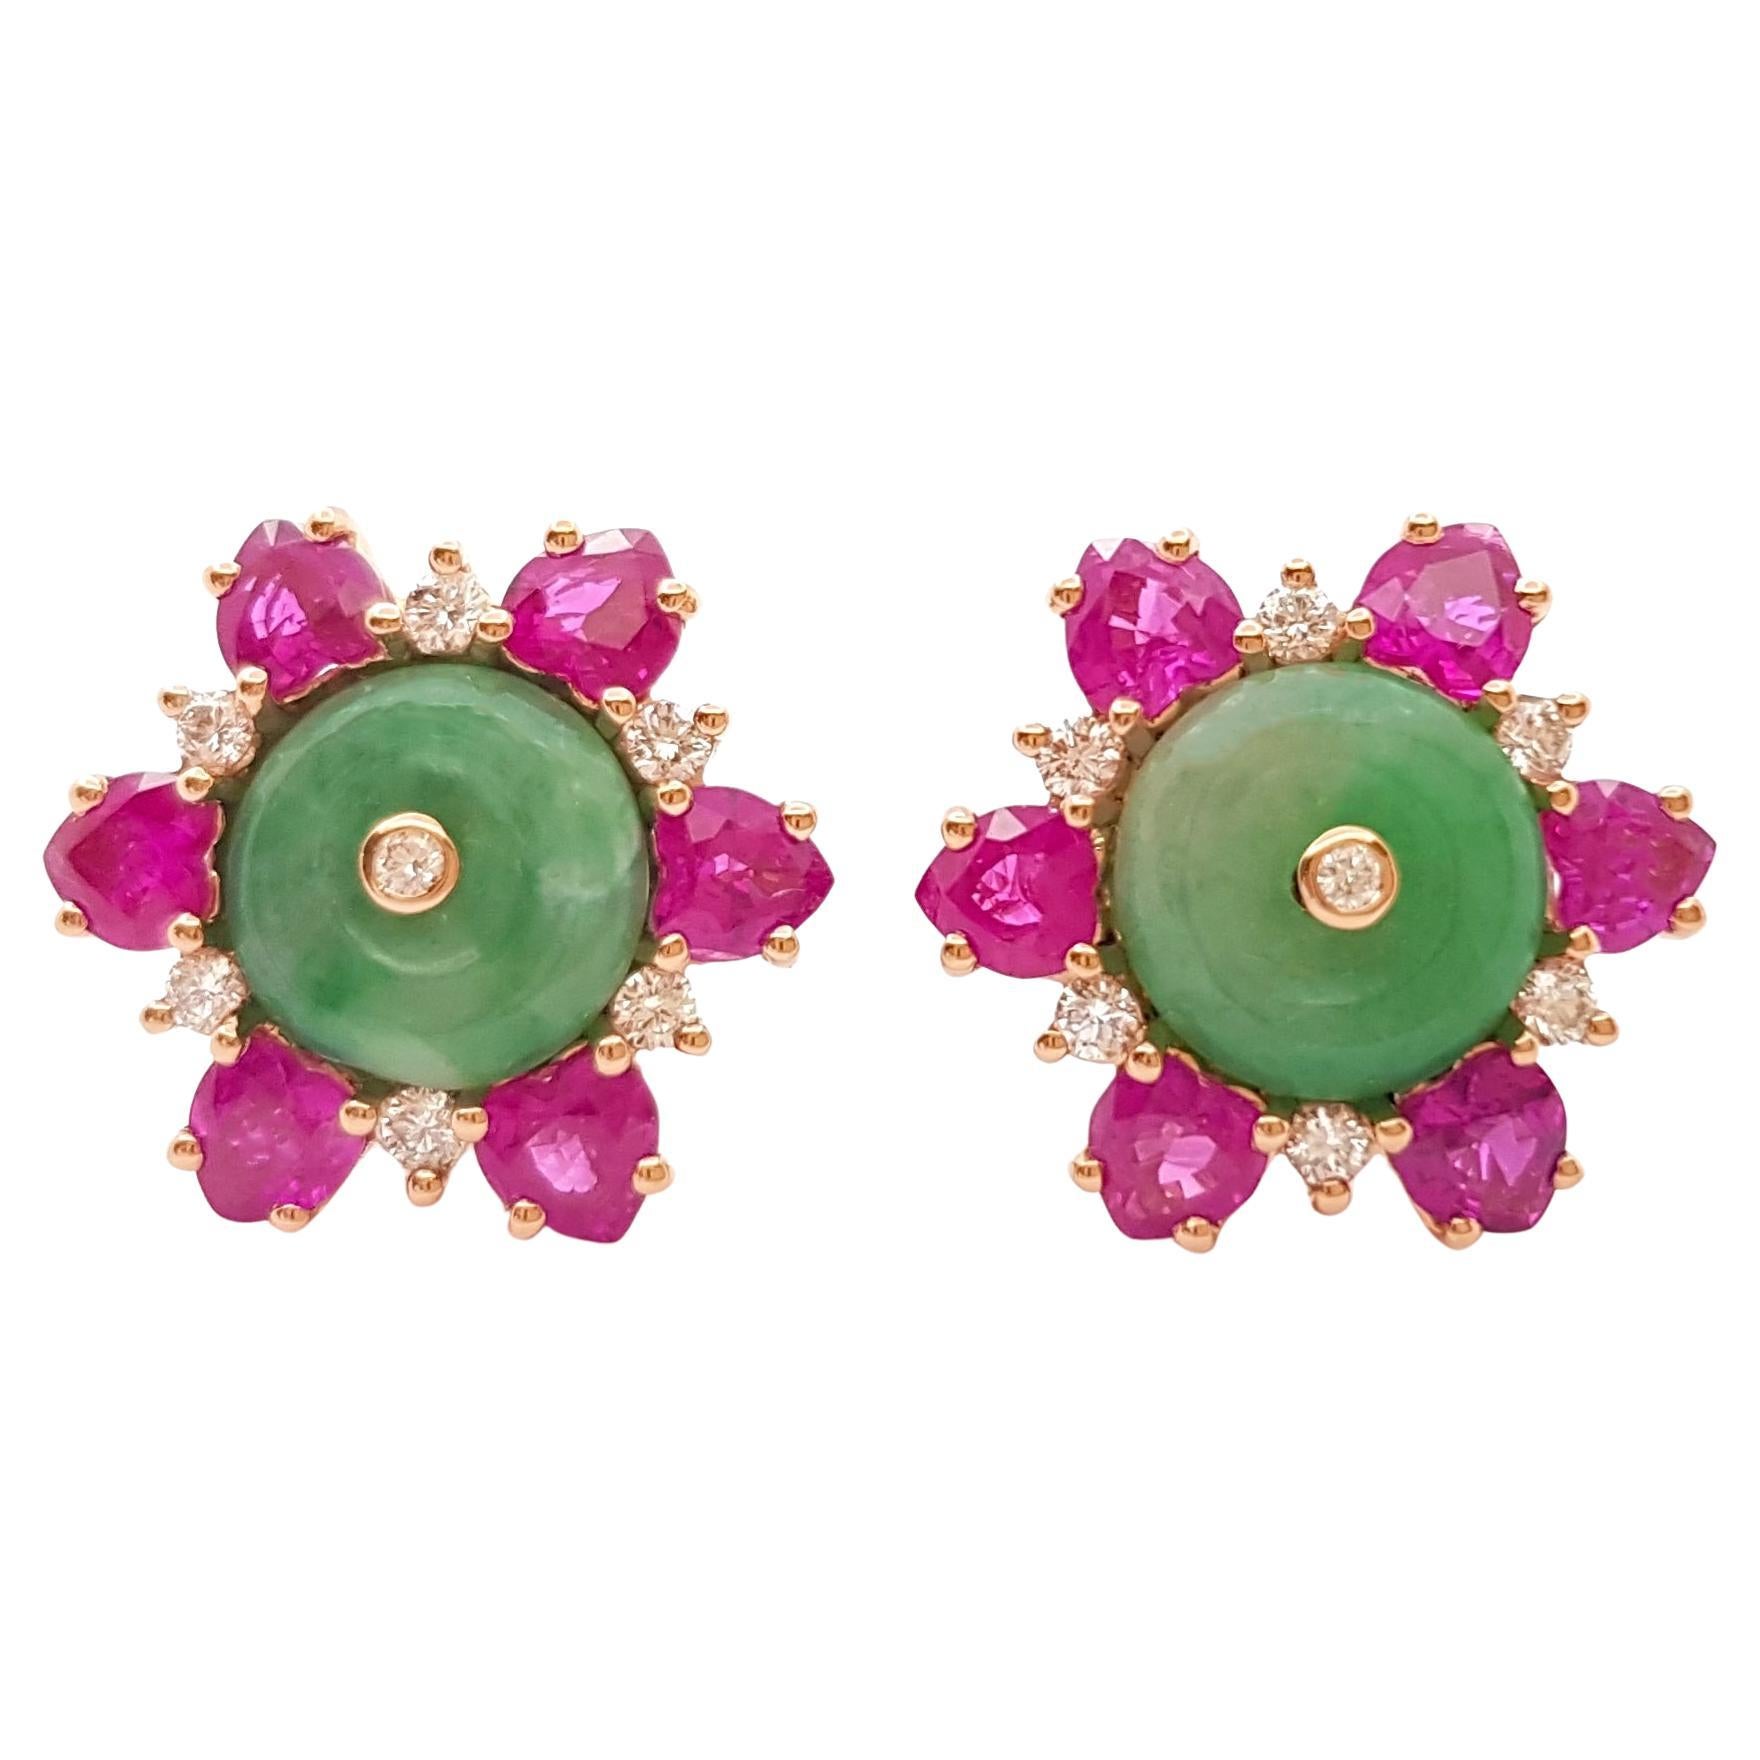 Boucles d'oreilles en jade, rubis et diamants montées sur or rose 18 carats